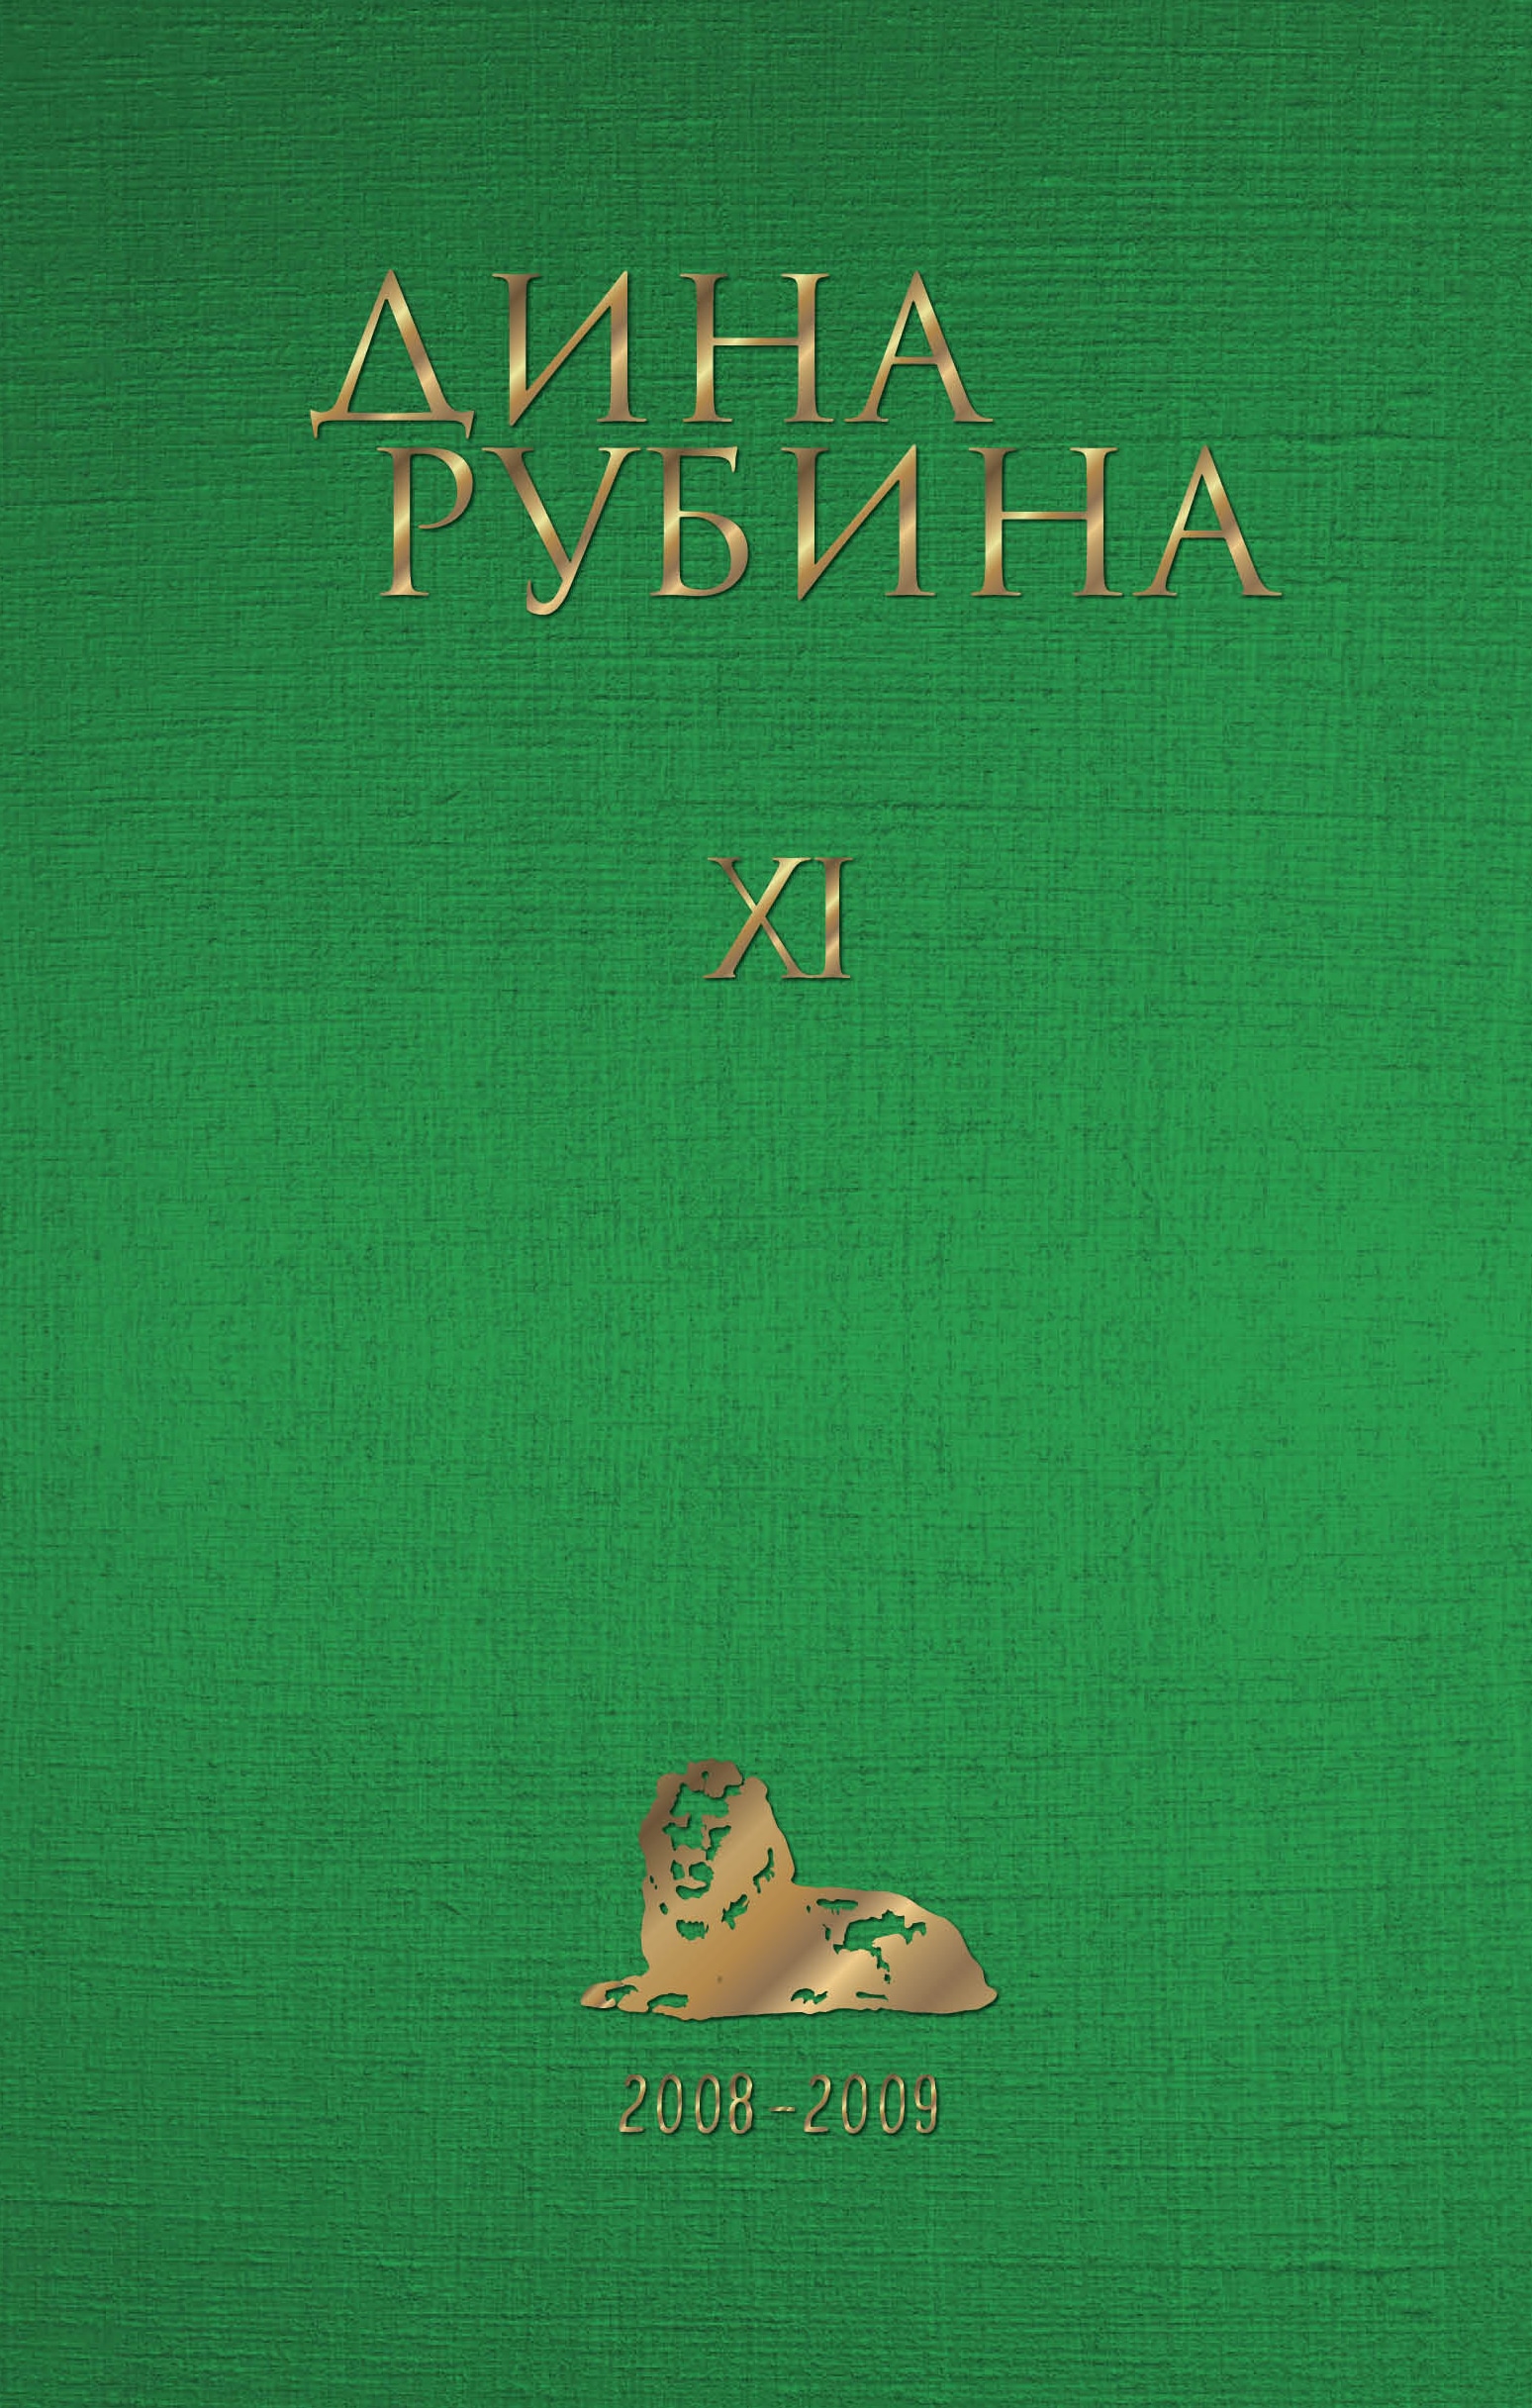 Book “Том 11” by Дина Рубина — June 30, 2022